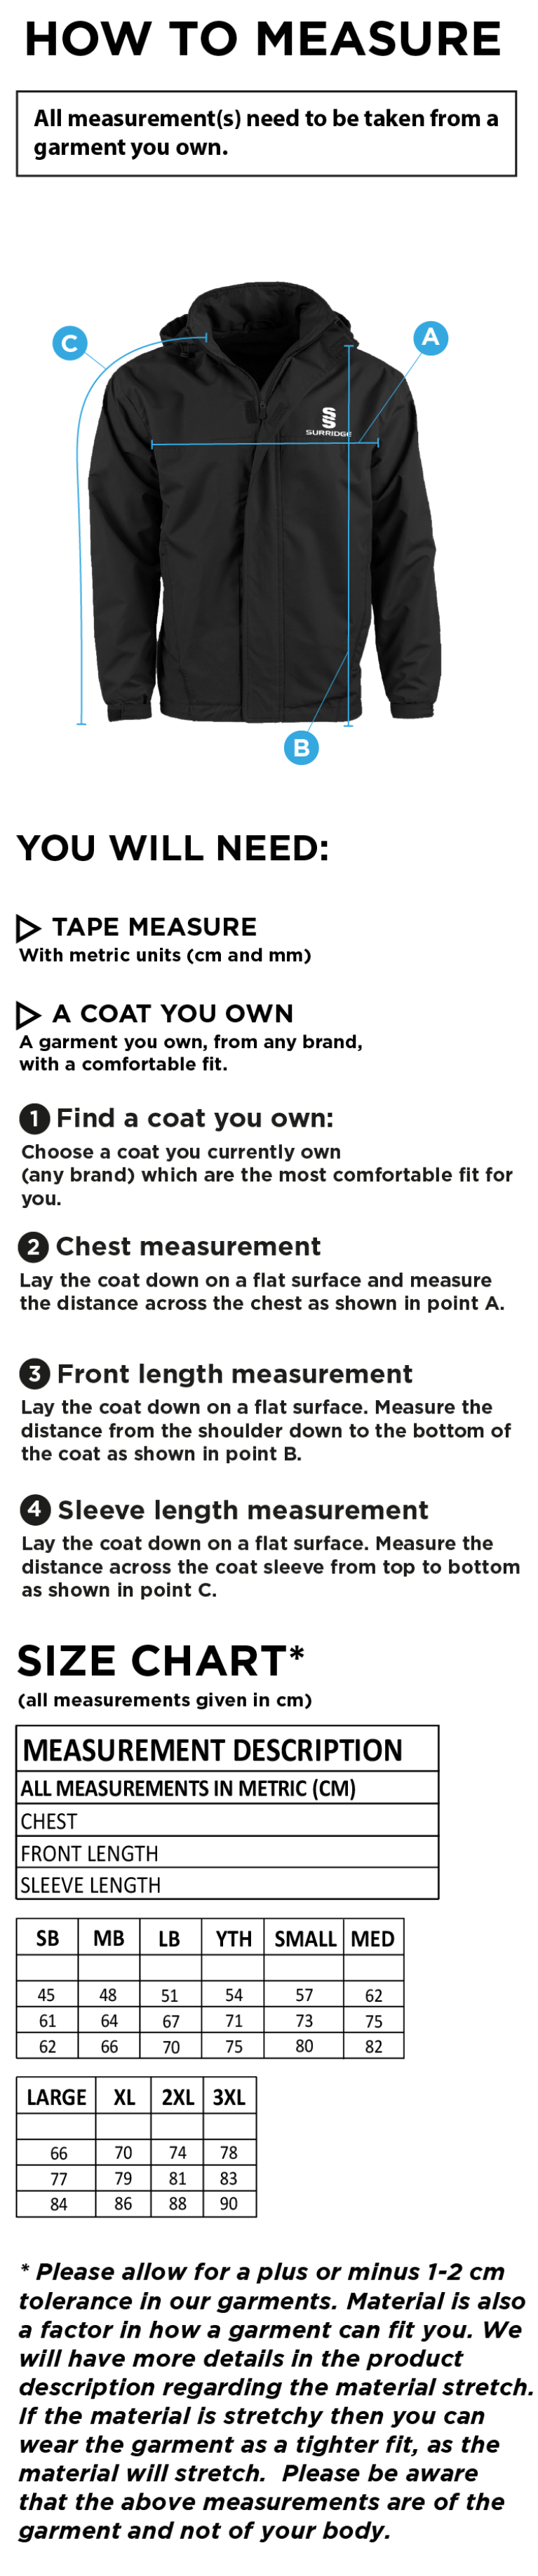 Dual Fleece Lined Jacket : Black - Size Guide